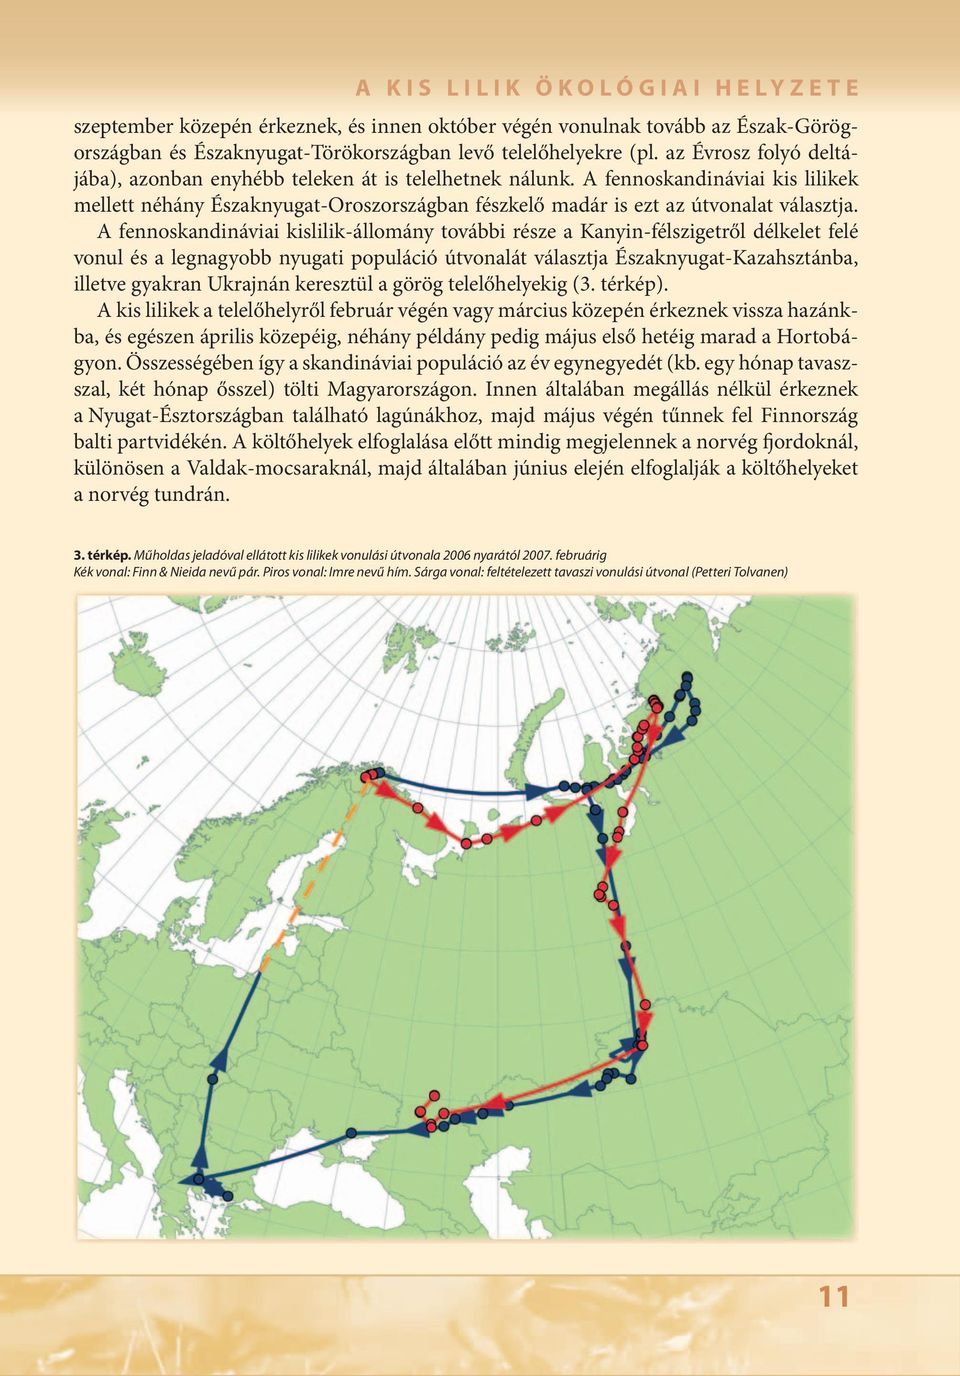 A fennoskandináviai kislilik-állomány további része a Kanyin-félszigetről délkelet felé vonul és a legnagyobb nyugati populáció útvonalát választja Északnyugat-Kazahsztánba, illetve gyakran Ukrajnán